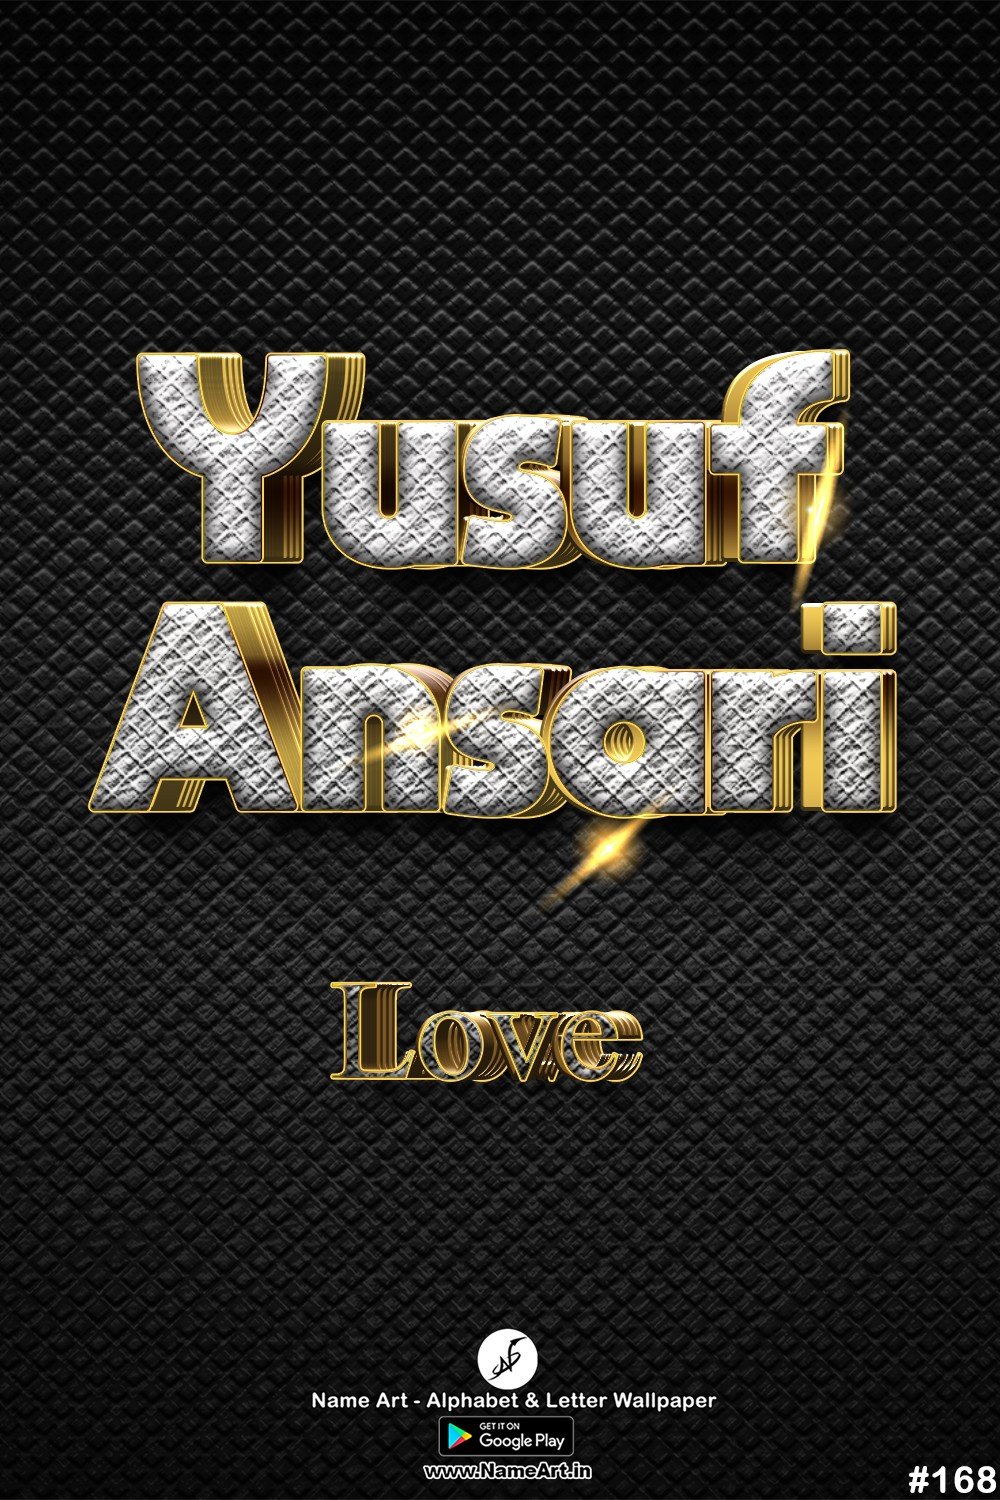 Yusuf Ansari | Whatsapp Status Yusuf Ansari | Happy Birthday Yusuf Ansari !! | New Whatsapp Status Yusuf Ansari Images |